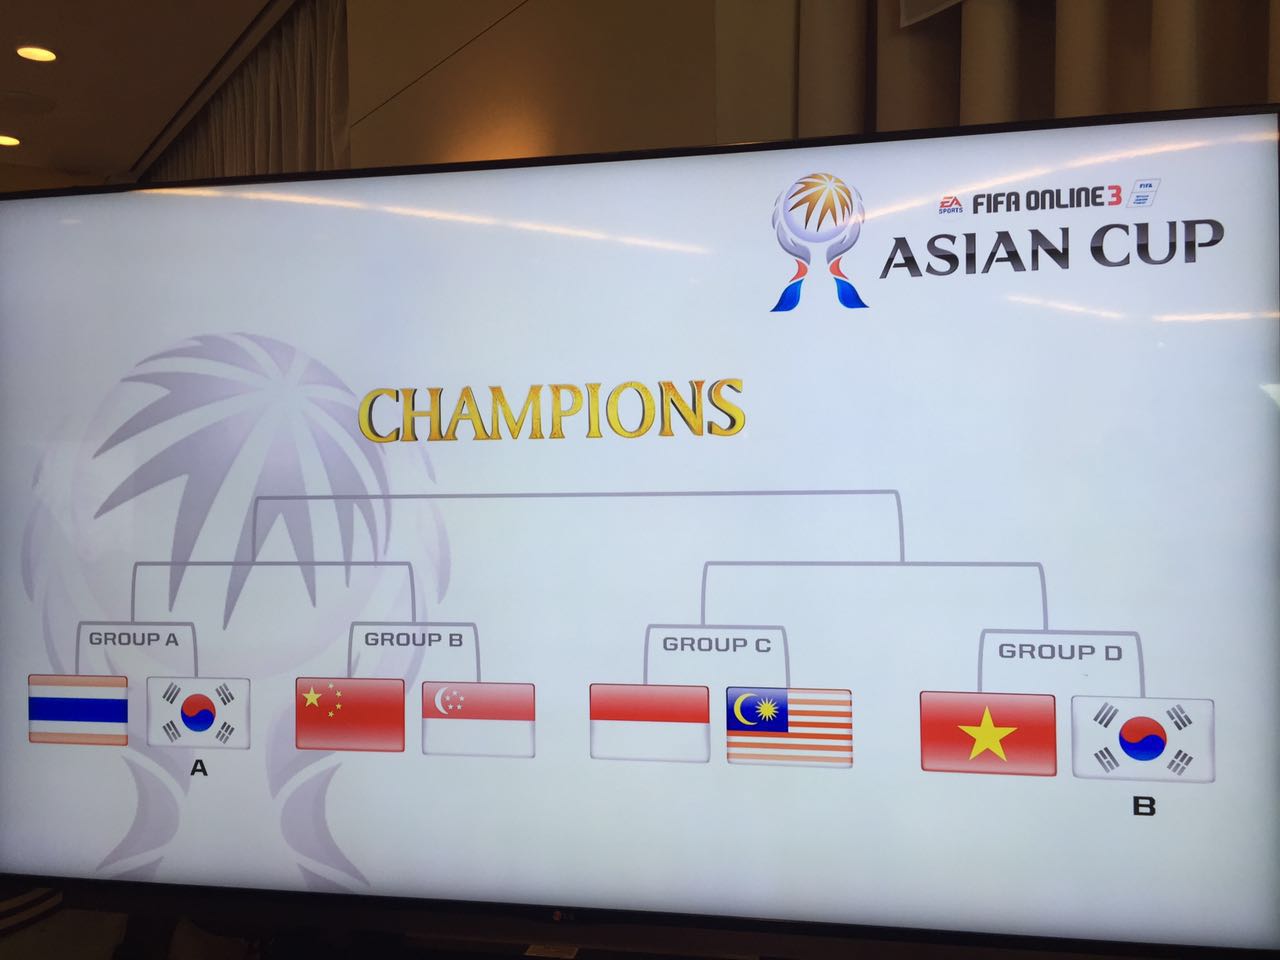 FIFAOnline3 2015 AsianCup分组及阵容名单介绍_网络游戏_游戏攻略_-六神源码网